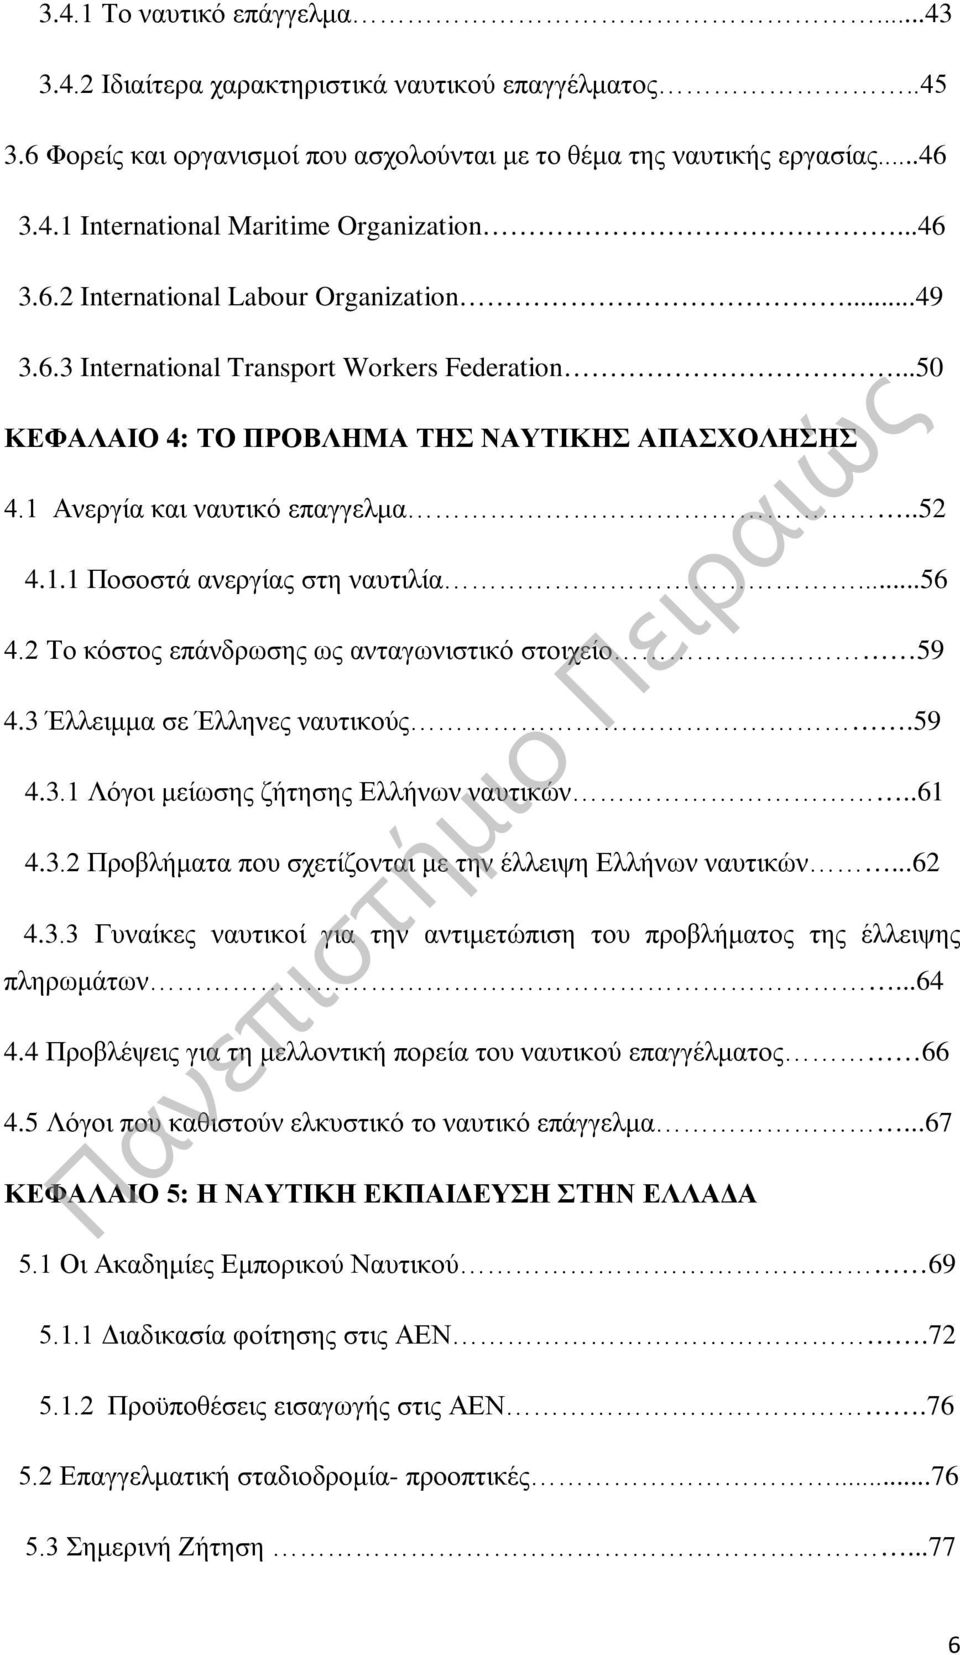 ..56 4.2 Το κόστος επάνδρωσης ως ανταγωνιστικό στοιχείο 59 4.3 Έλλειμμα σε Έλληνες ναυτικούς.59 4.3.1 Λόγοι μείωσης ζήτησης Ελλήνων ναυτικών..61 4.3.2 Προβλήματα που σχετίζονται με την έλλειψη Ελλήνων ναυτικών.